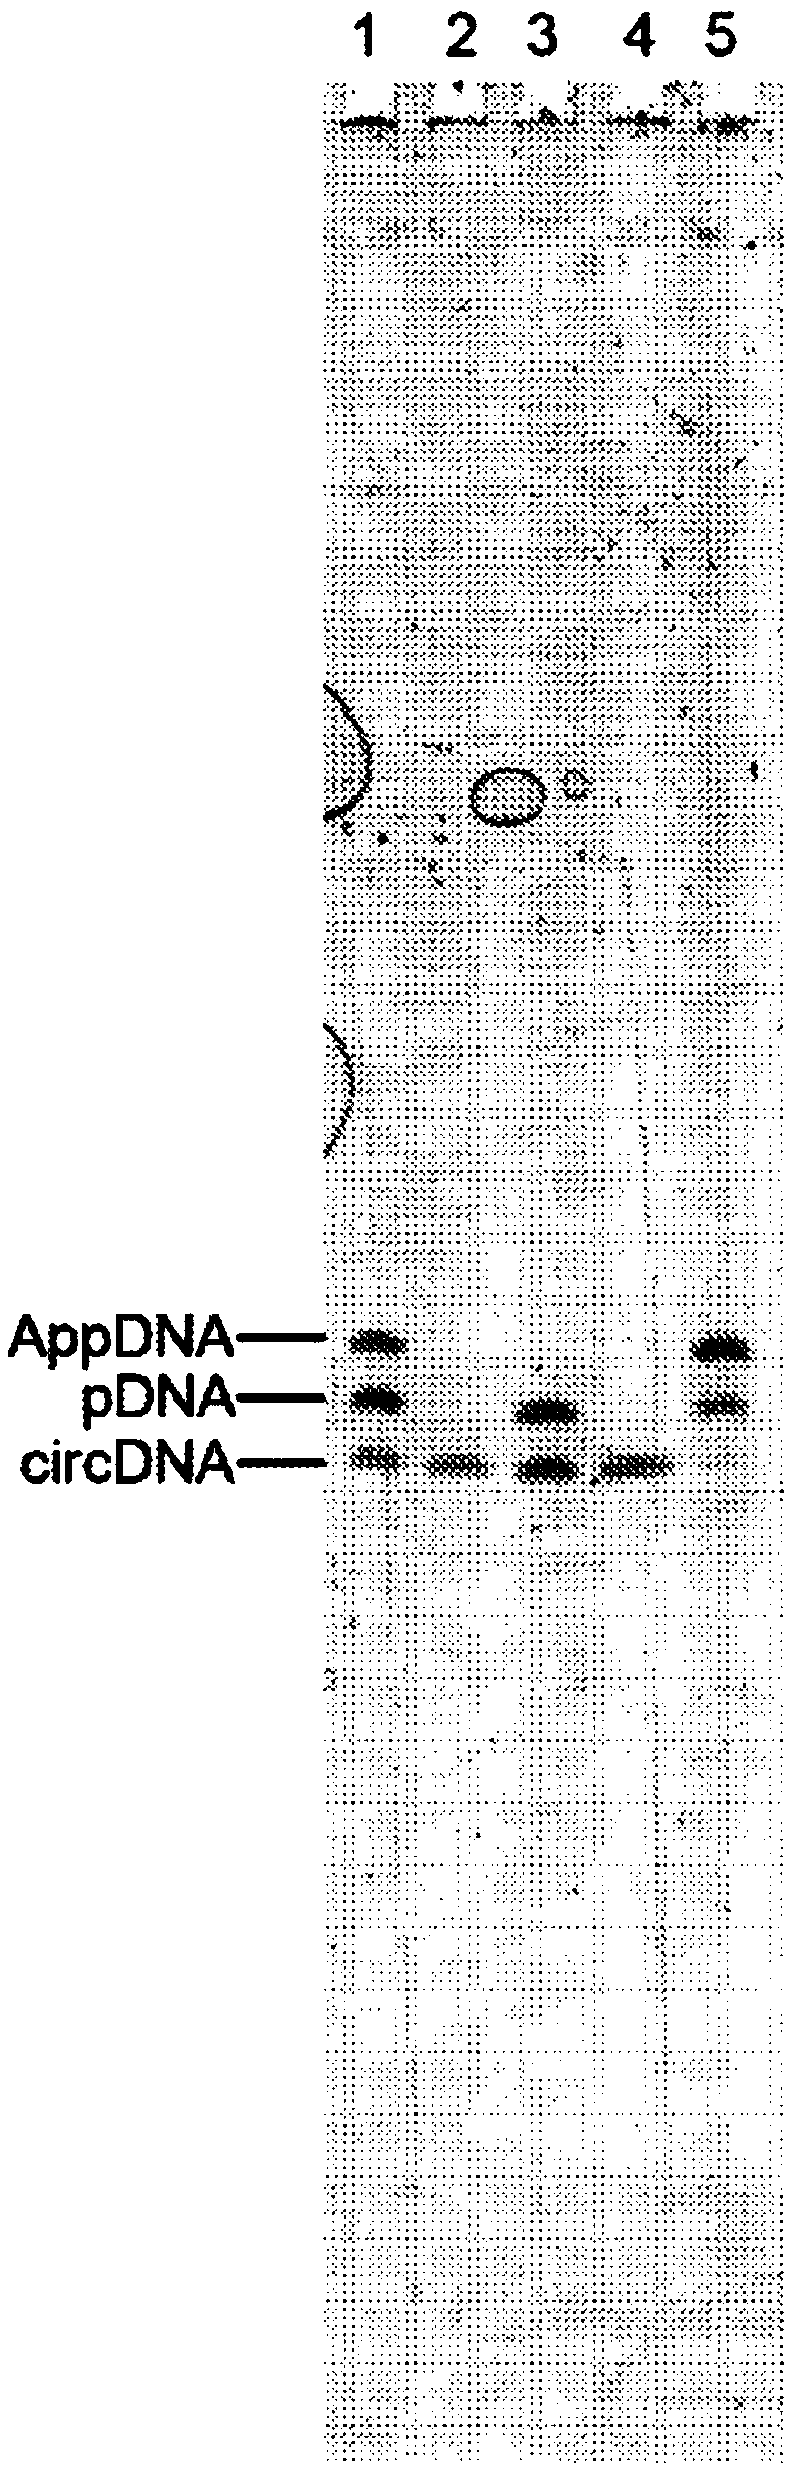 HYPER-THERMOSTABLE LYSINE-MUTANT ssDNA/RNA LIGASES